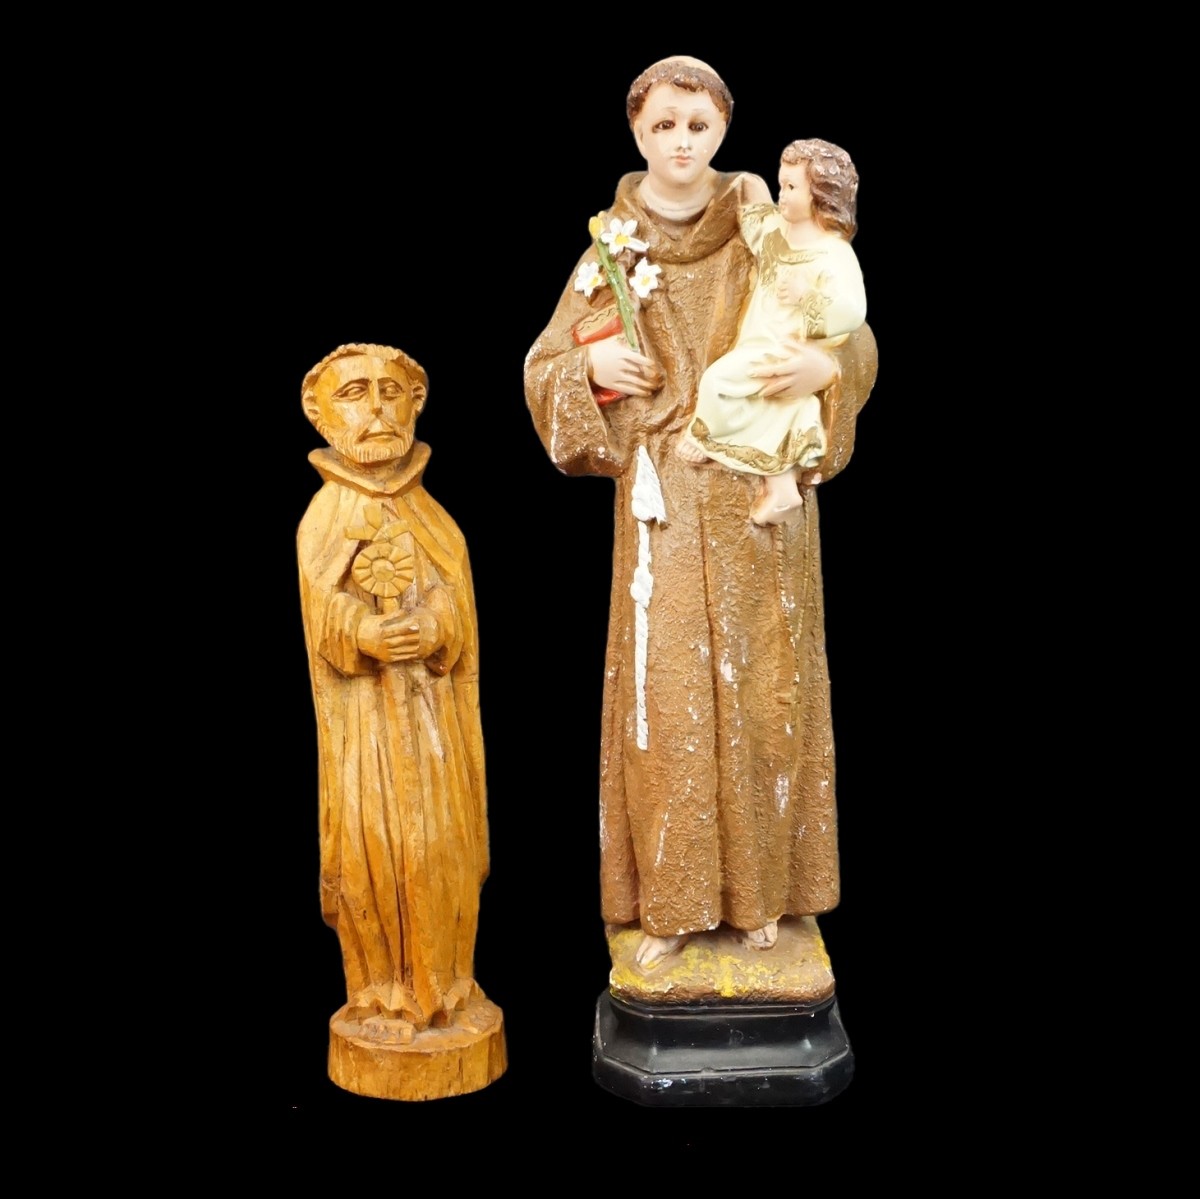 Four Santos Figurines